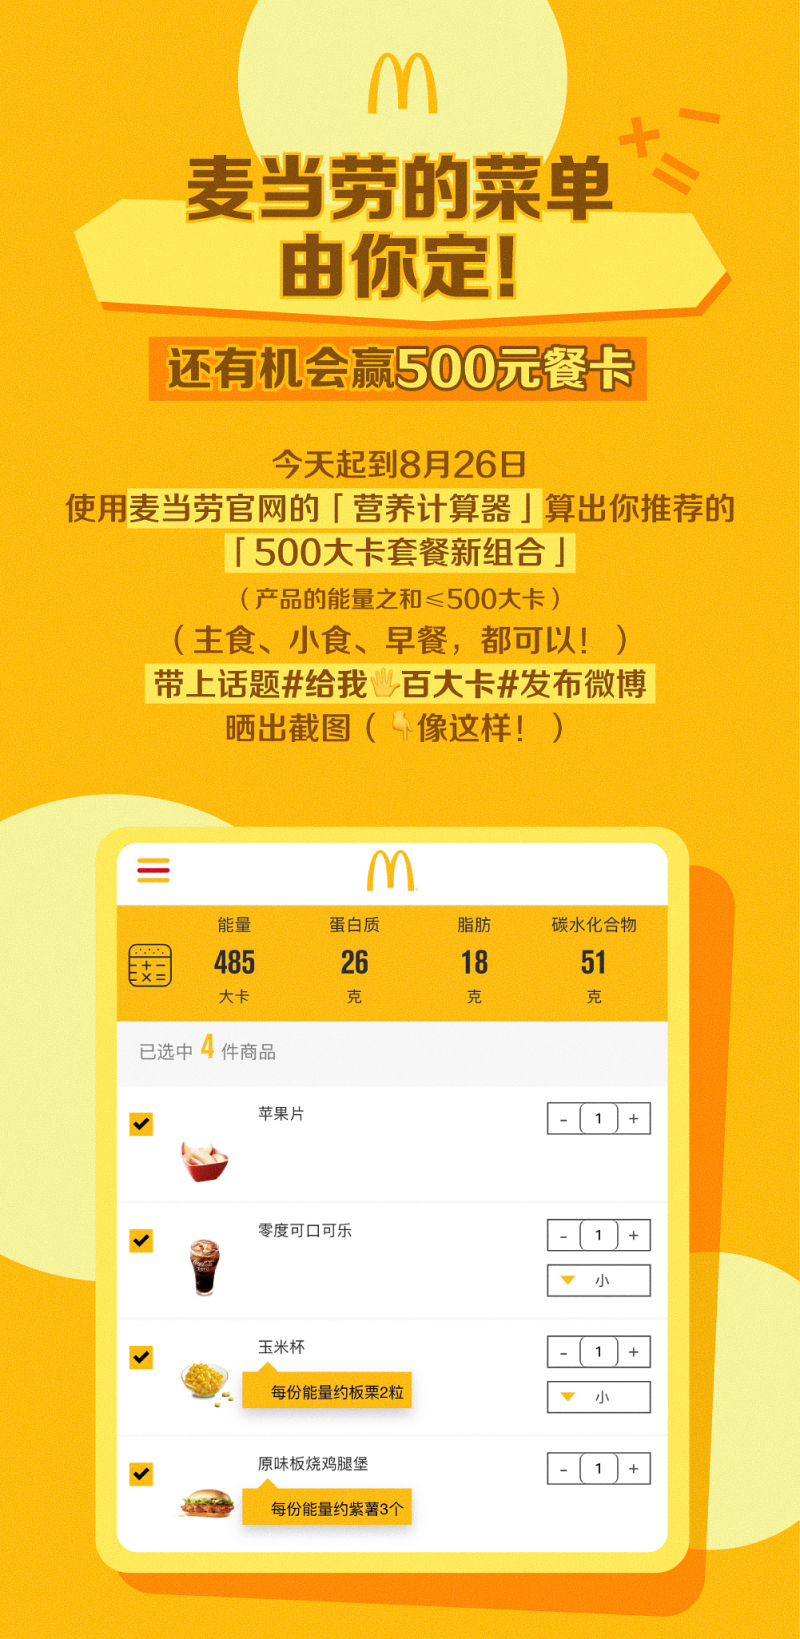 麦当劳中国公开征集500大卡套餐新组合